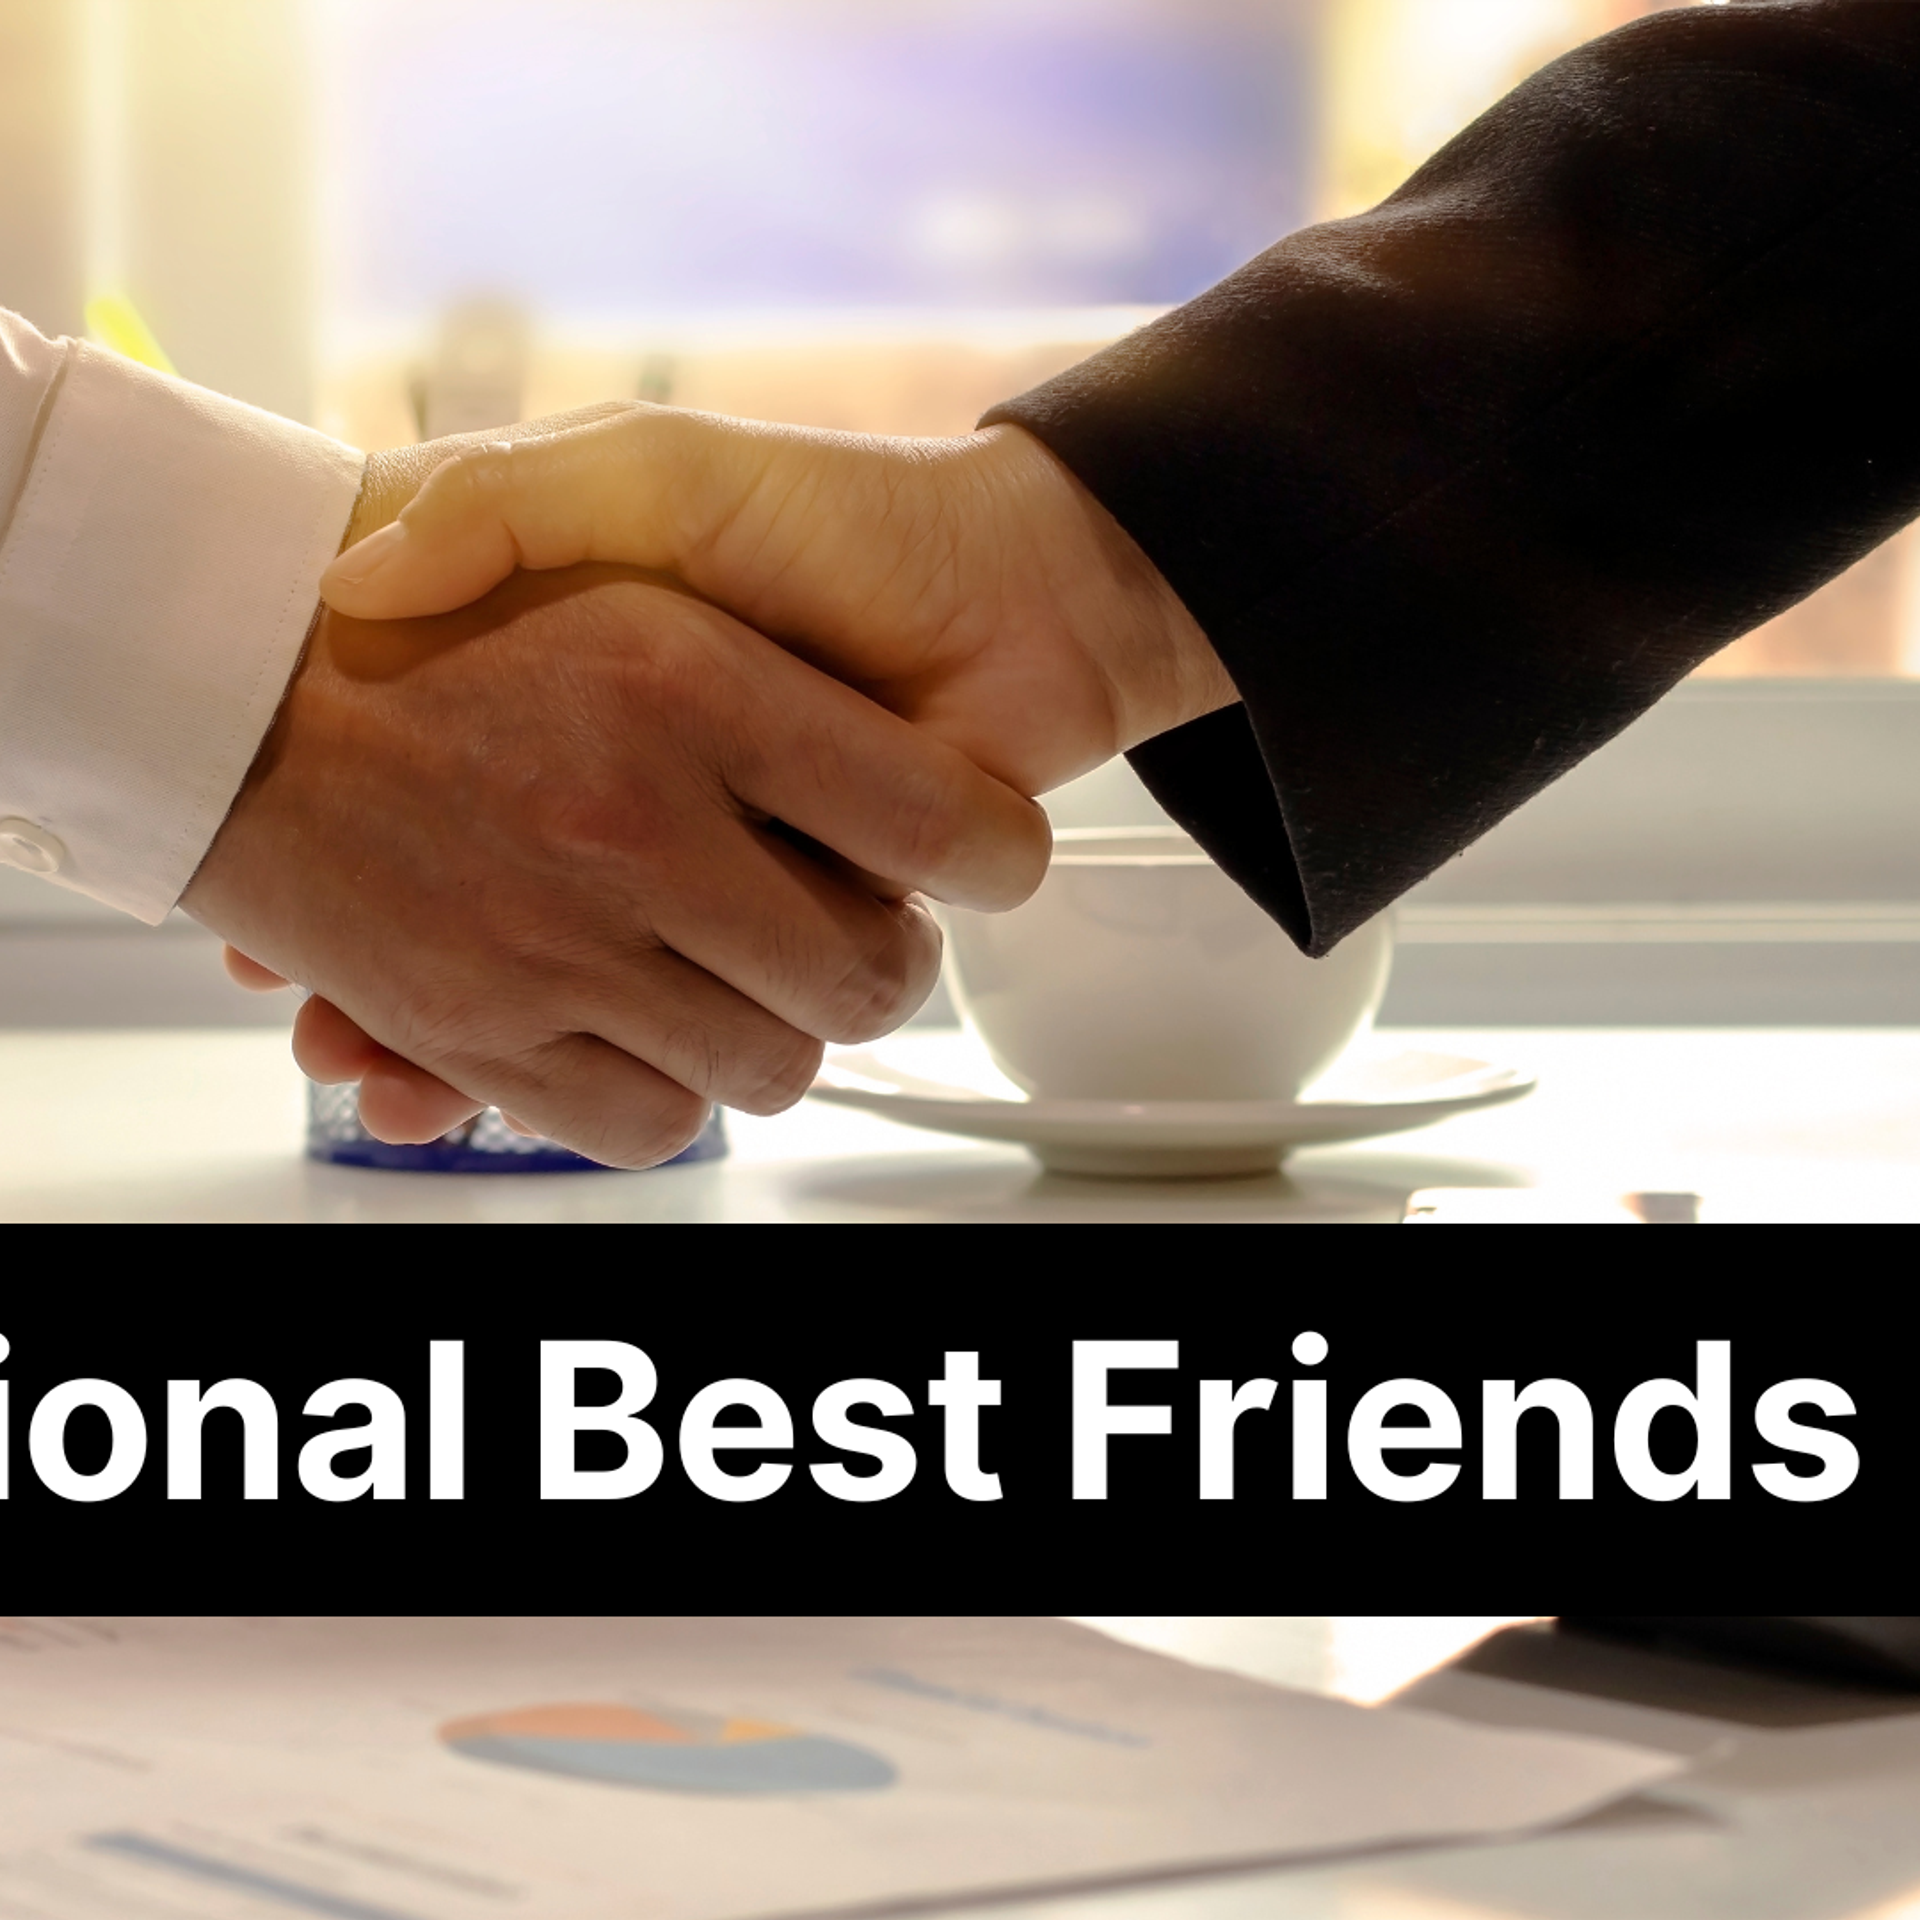 Best friends as business partners: A winning formula